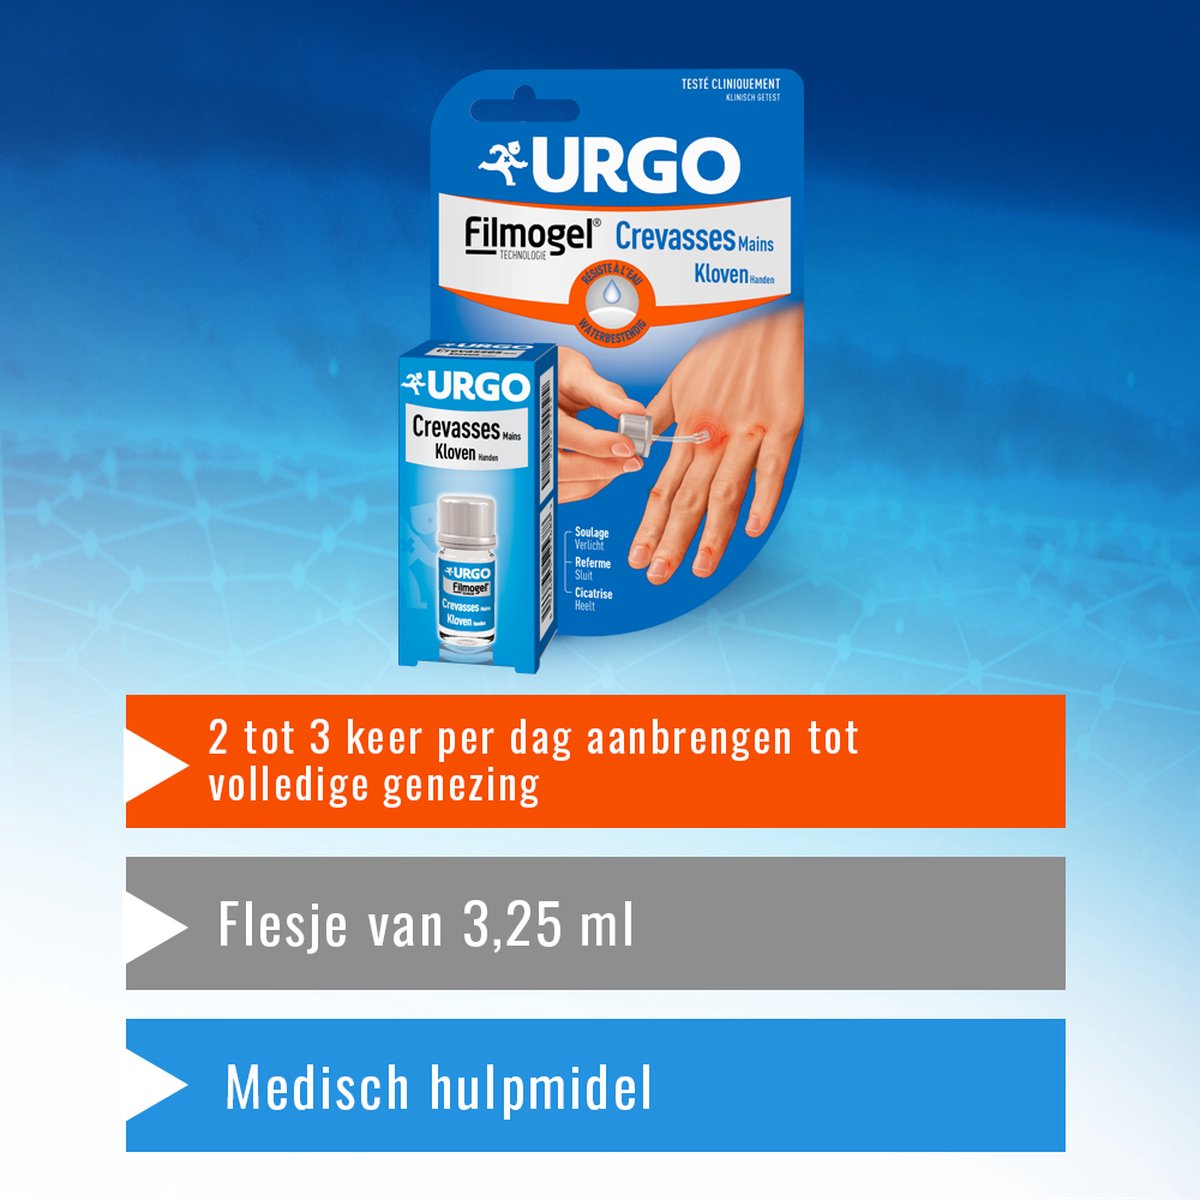 Urgo Filmogel Crevasses mains Pansement liquide - Cicatrise - Gerçures